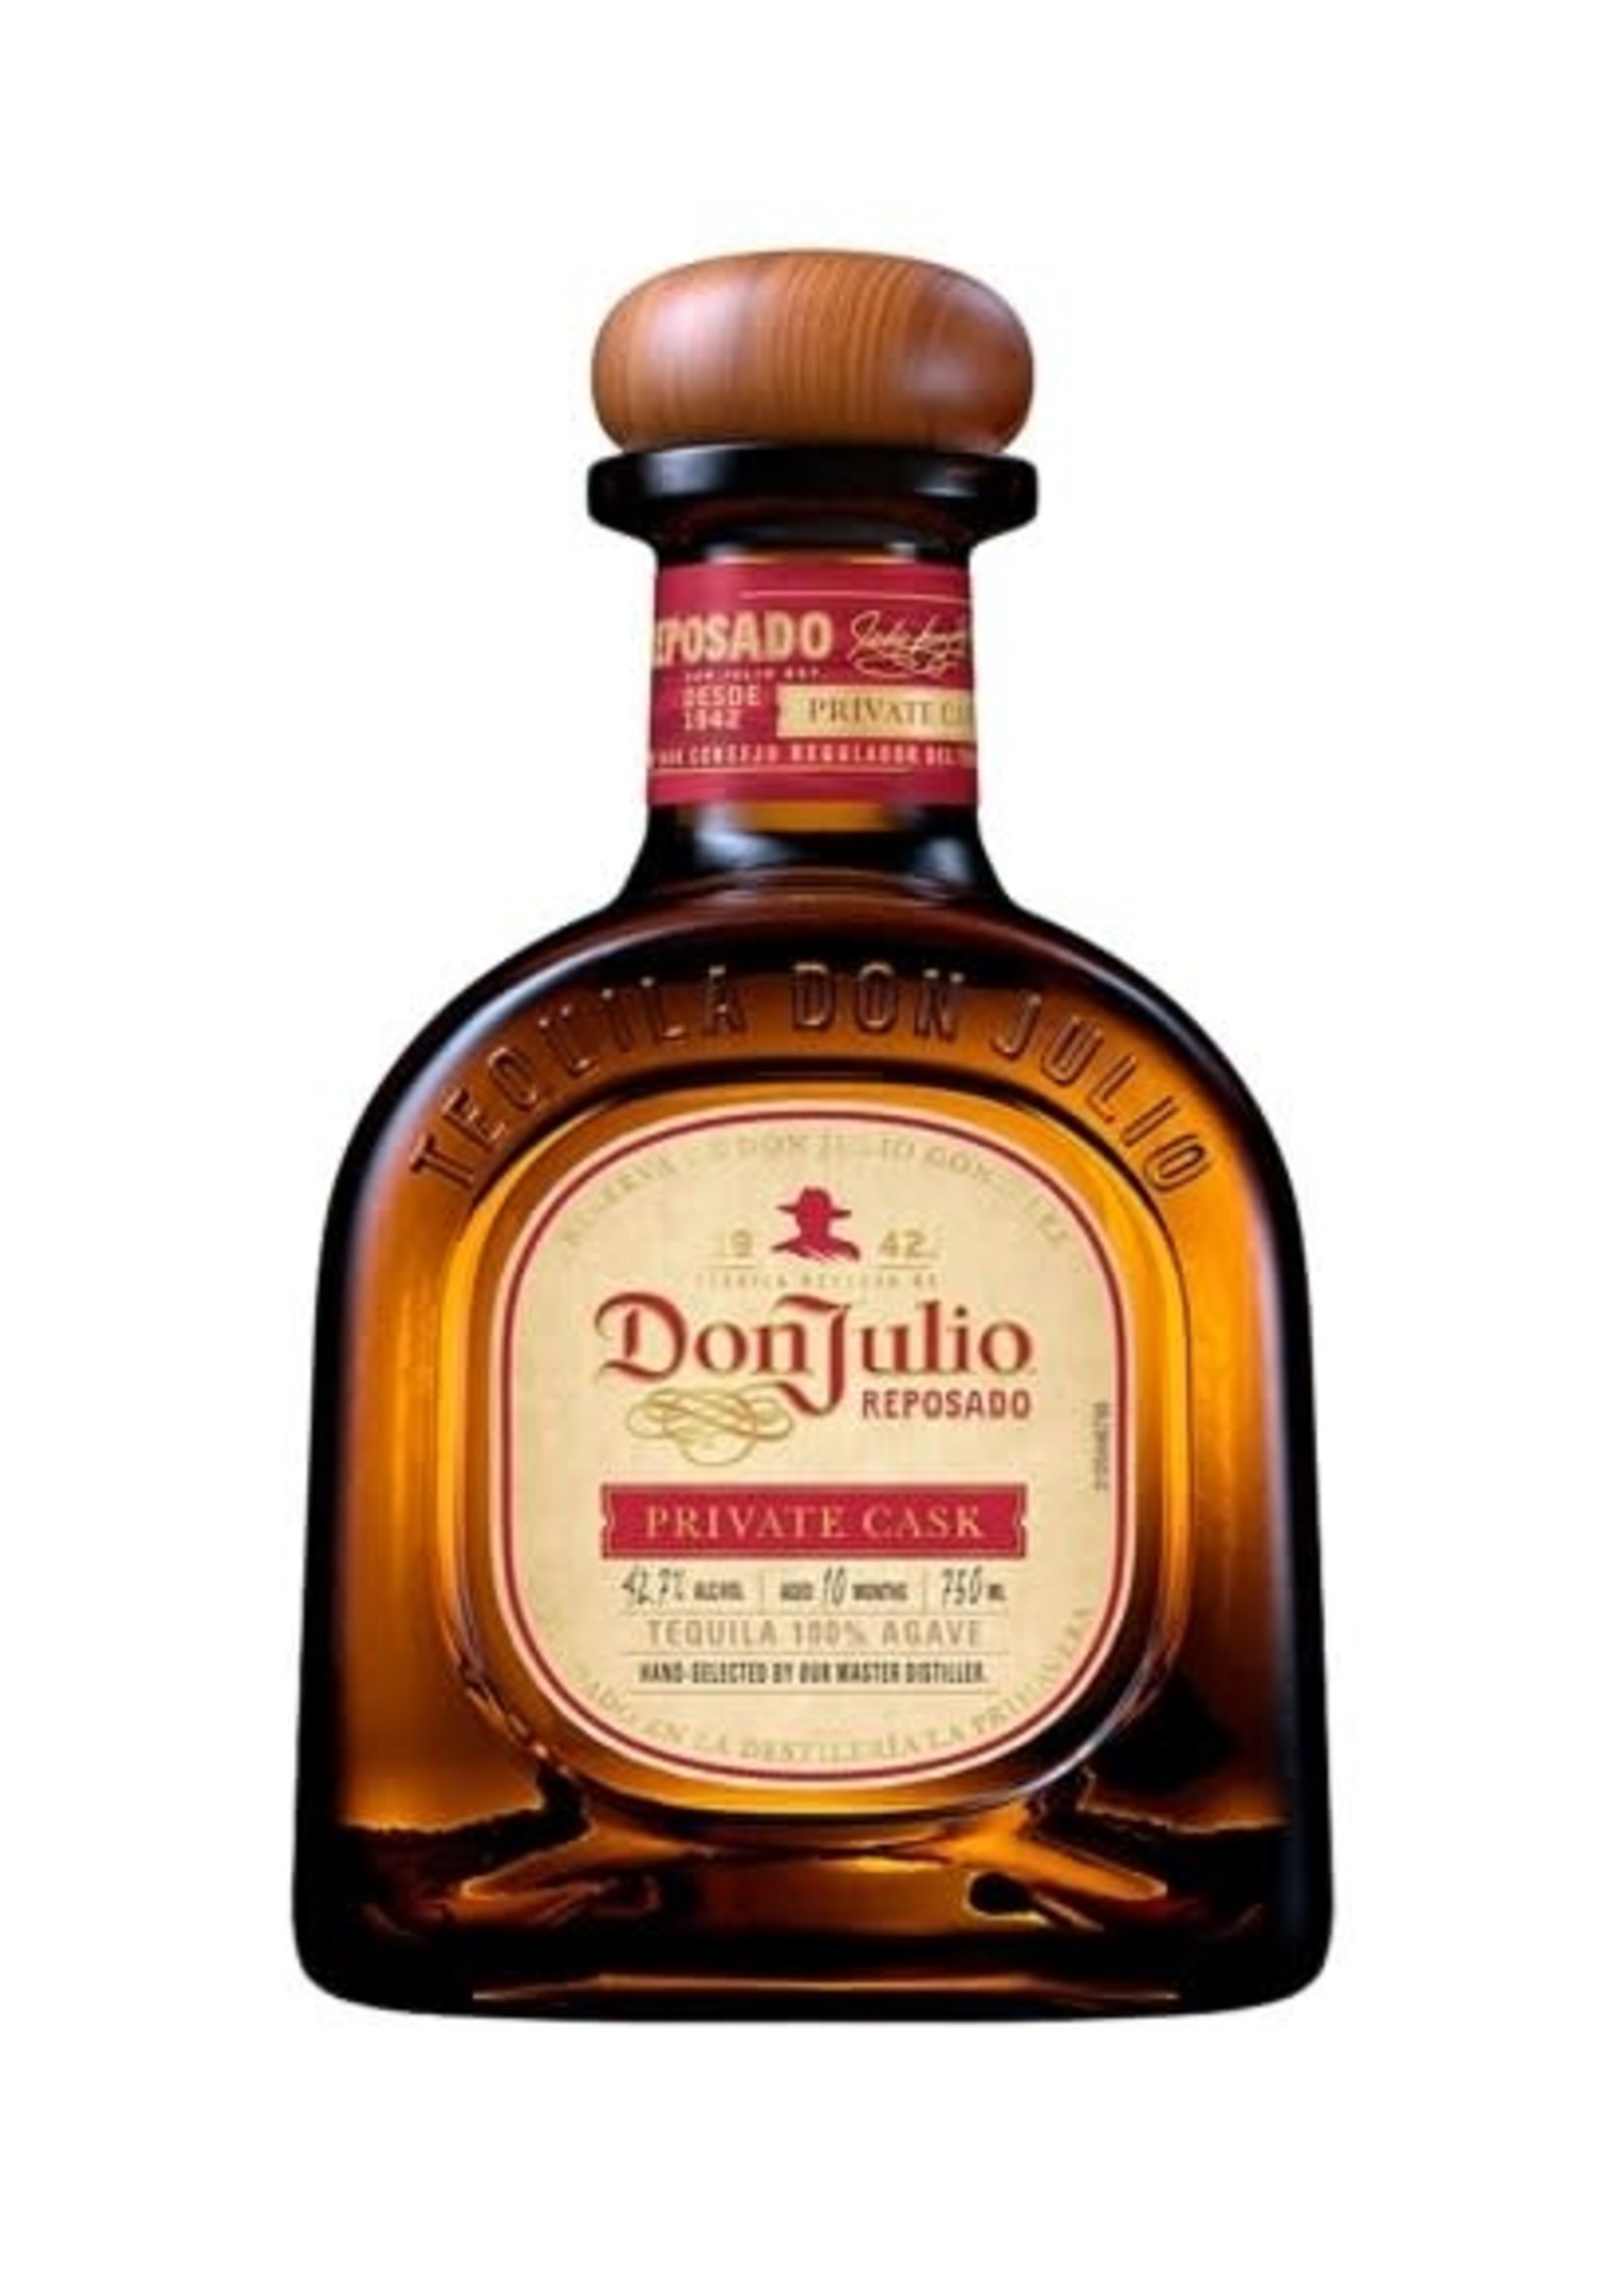 Don Julio Don Julio Reposado Tequila Private Cask 85.4Proof 750ml